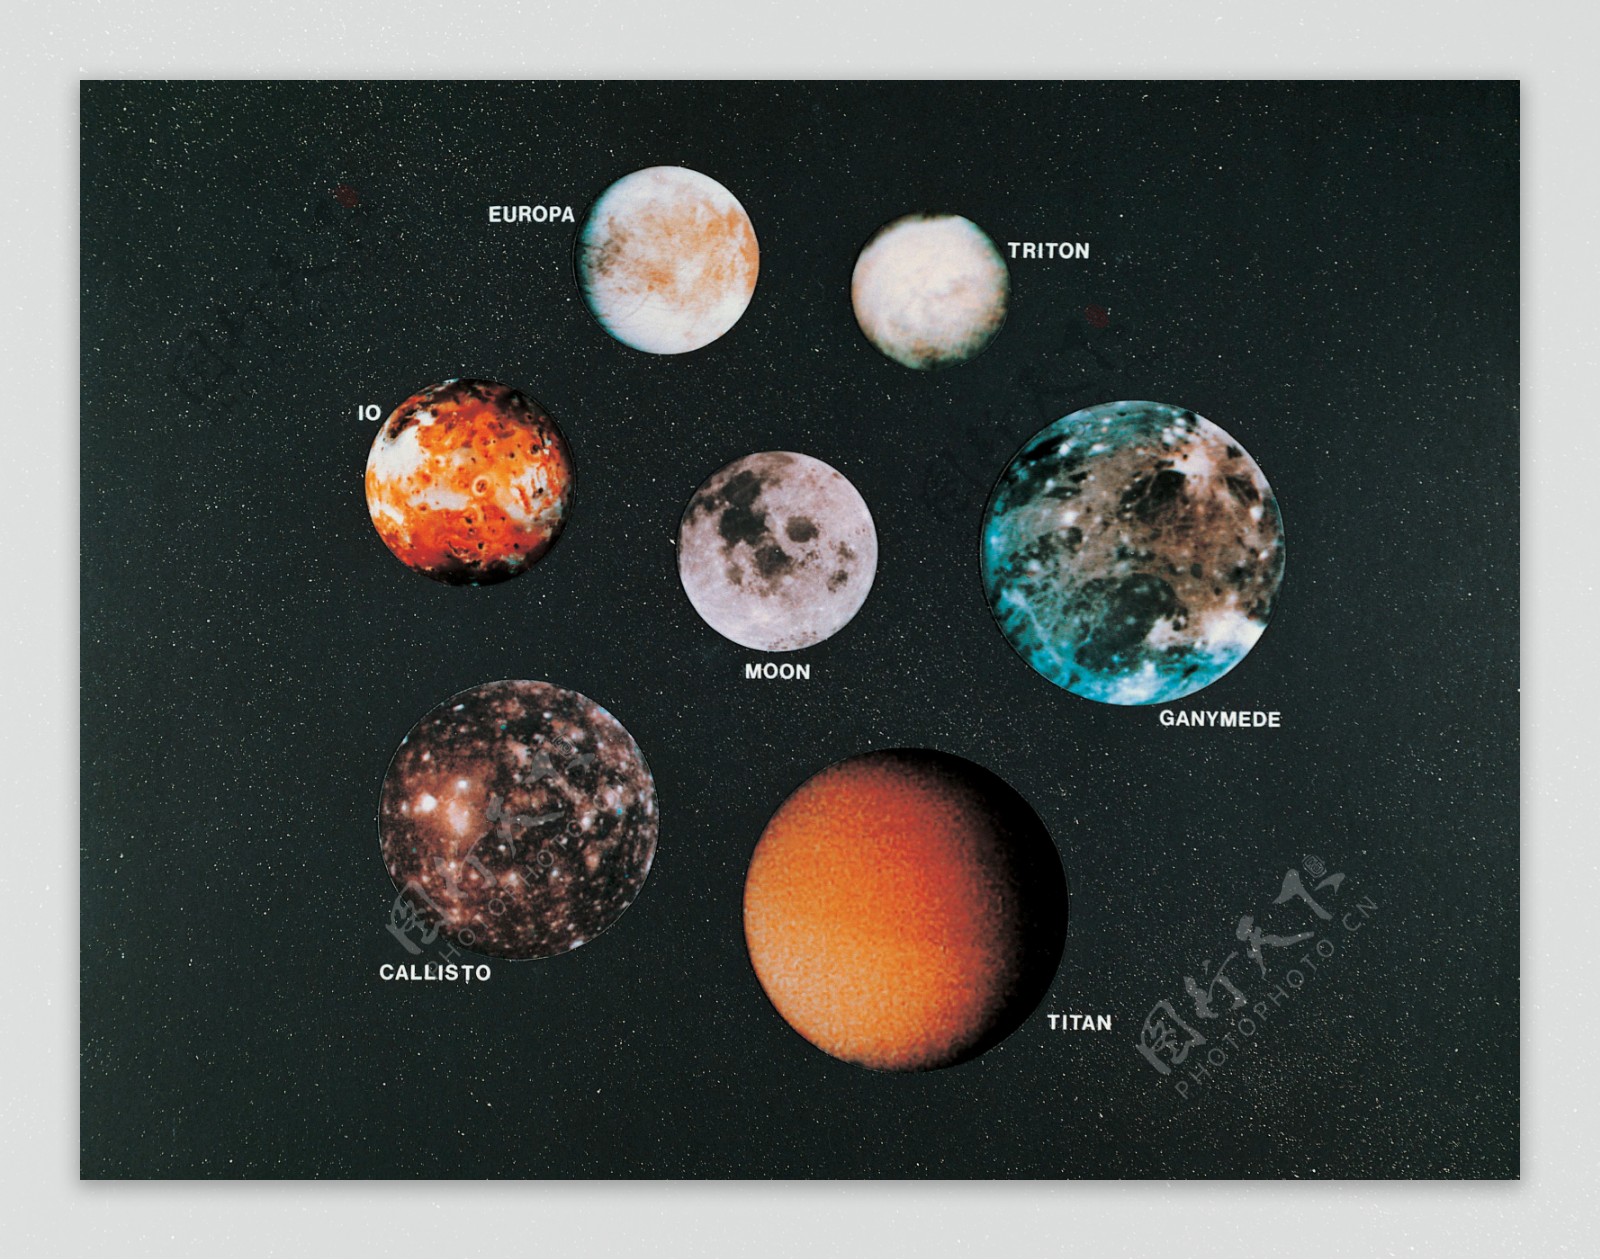 七大行星图片